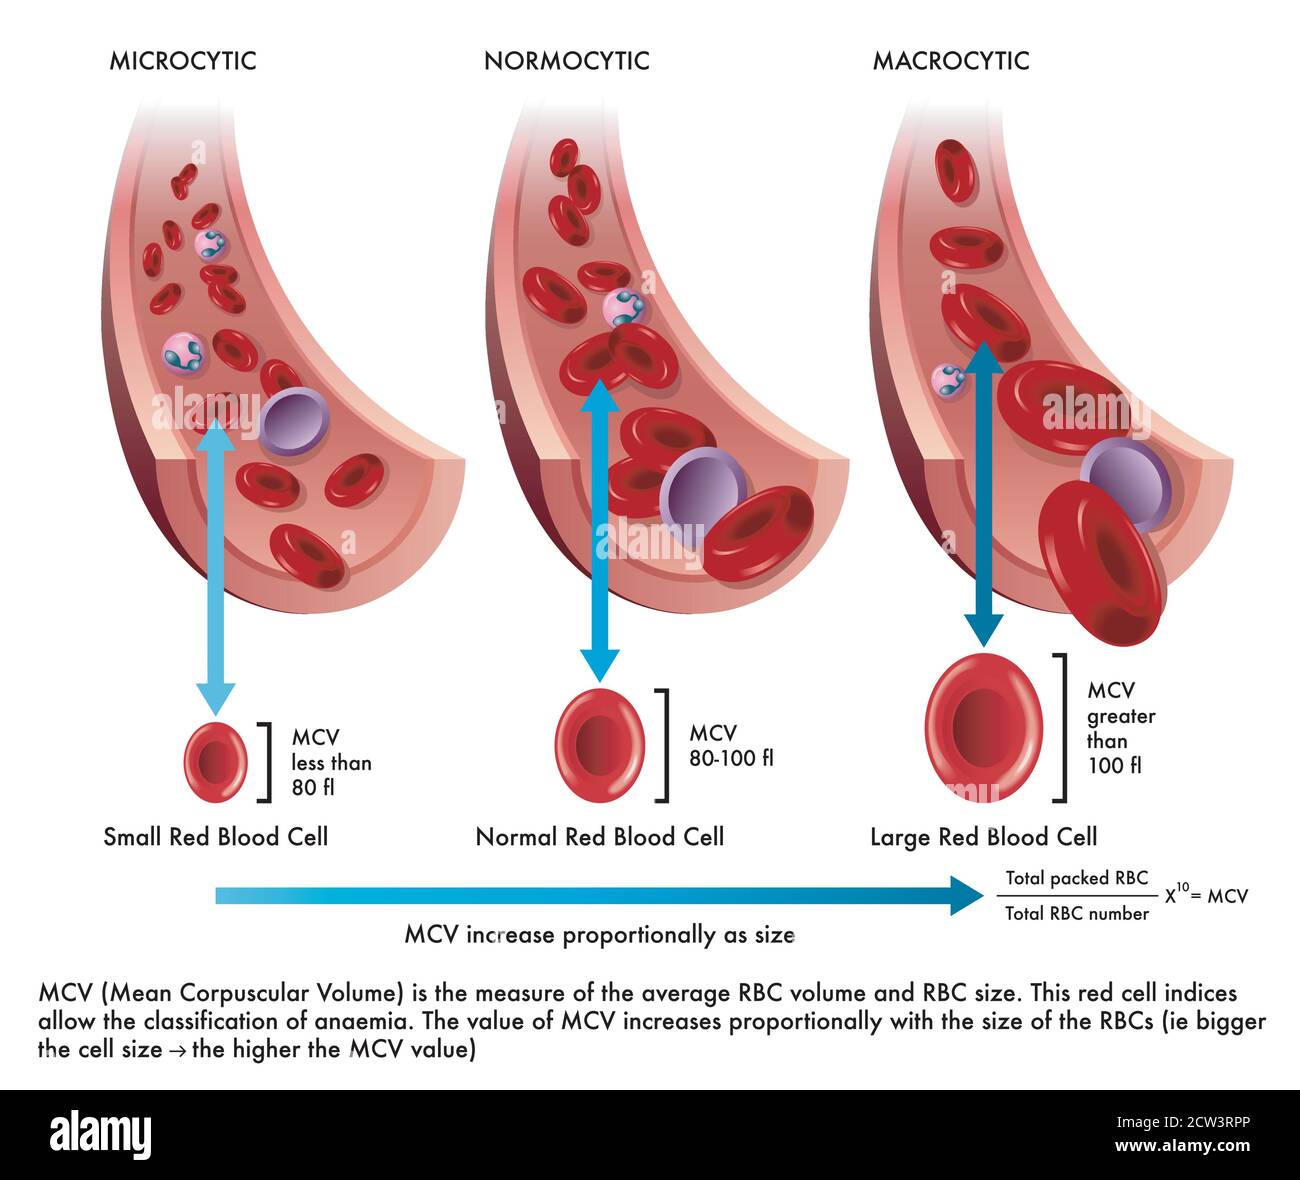 la ilustración muestra la diferencia entre una célula sanguínea roja normal con una afectada por la microcitosis y otra por la macrocitosis, con anotaciones Ilustración del Vector